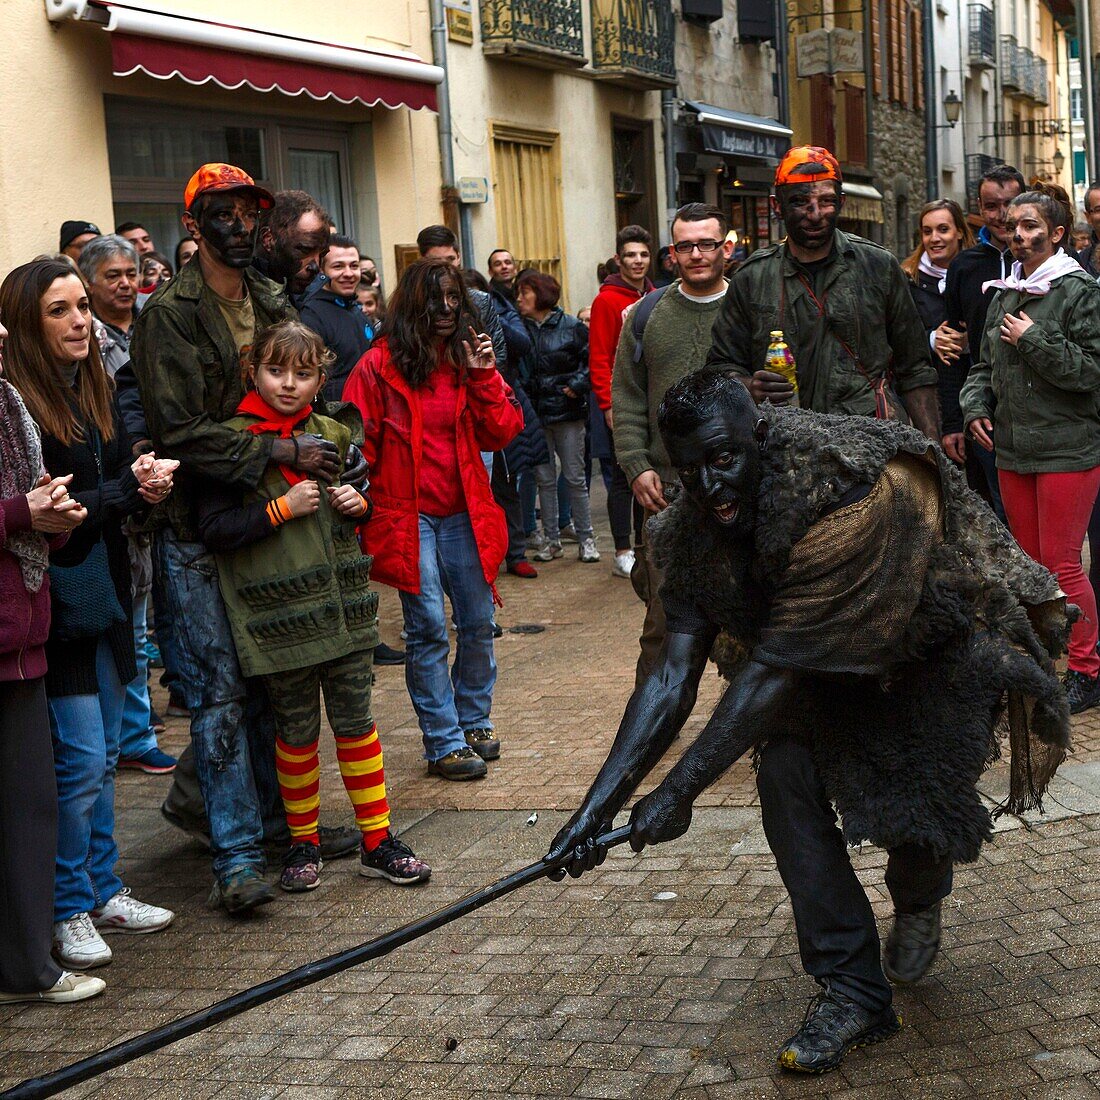 Frankreich, Pyrenees Orientales, Prats-de-Mollo, Lebensszene während des Bärenfestes beim Karneval